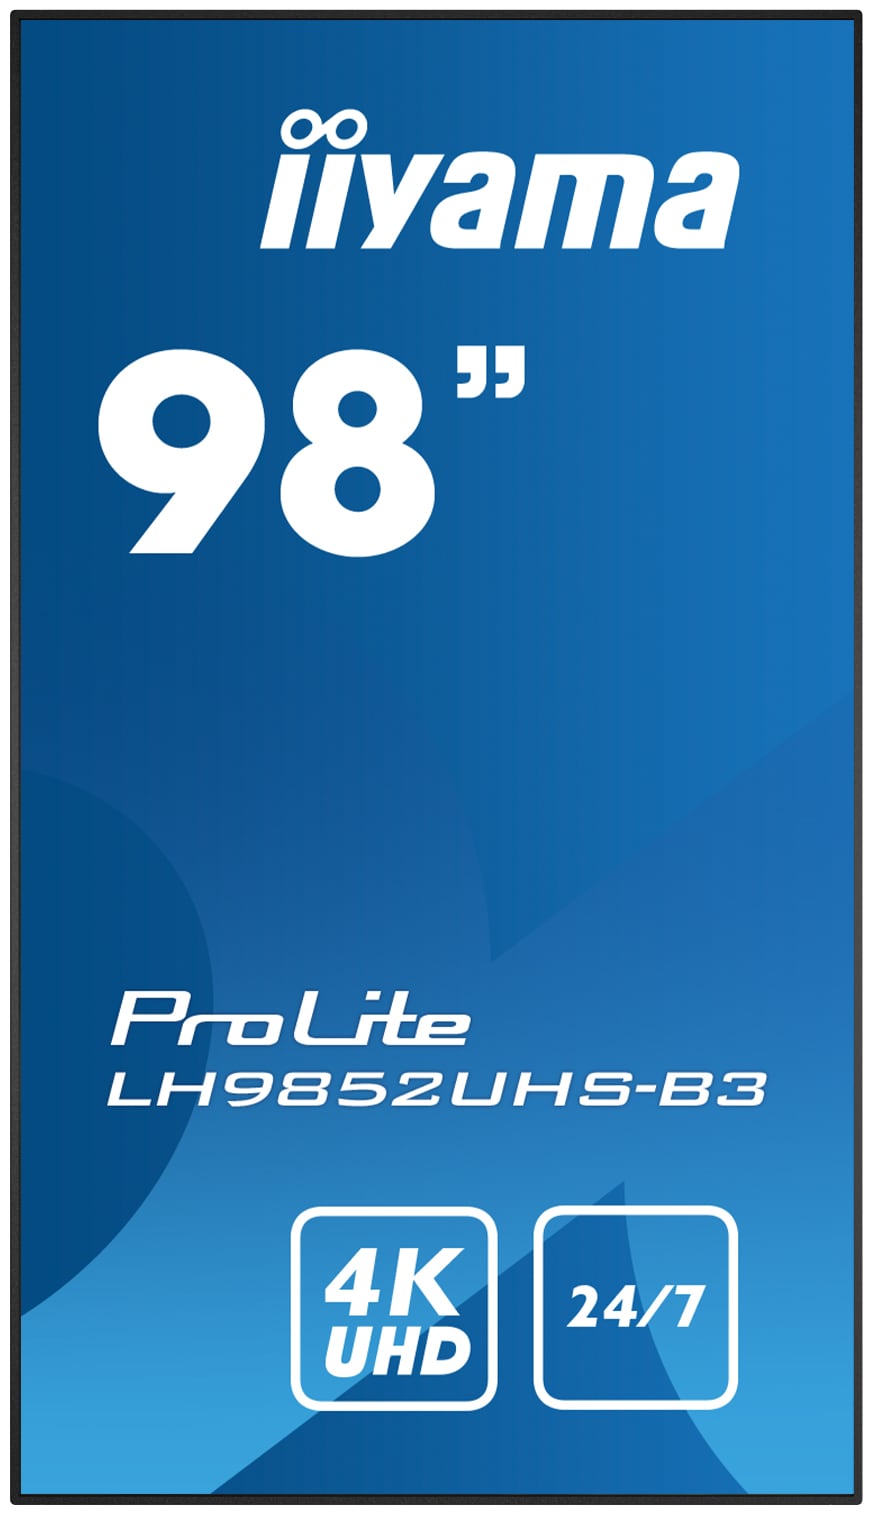 Iiyama ProLite LH9852UHS-B3 | Ein ᠎98" Digital Signage Display mit 4K UHD-Auflösung + GRATIS Wandhalterung